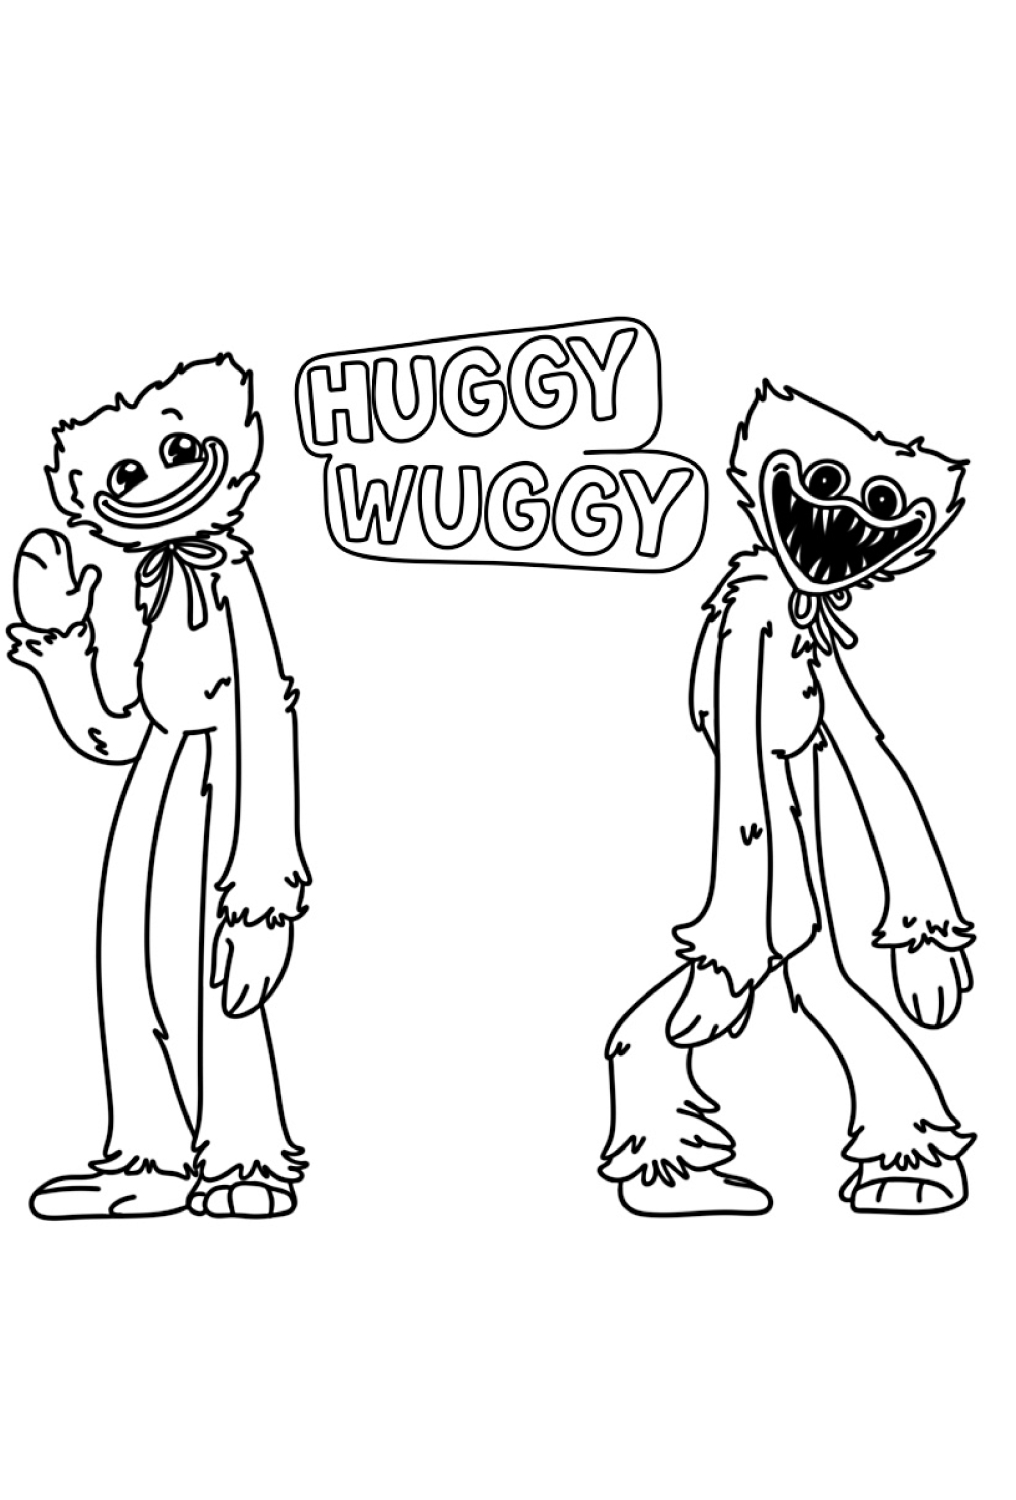 Dibujo 30 de Huggy Wuggy para imprimir y colorear